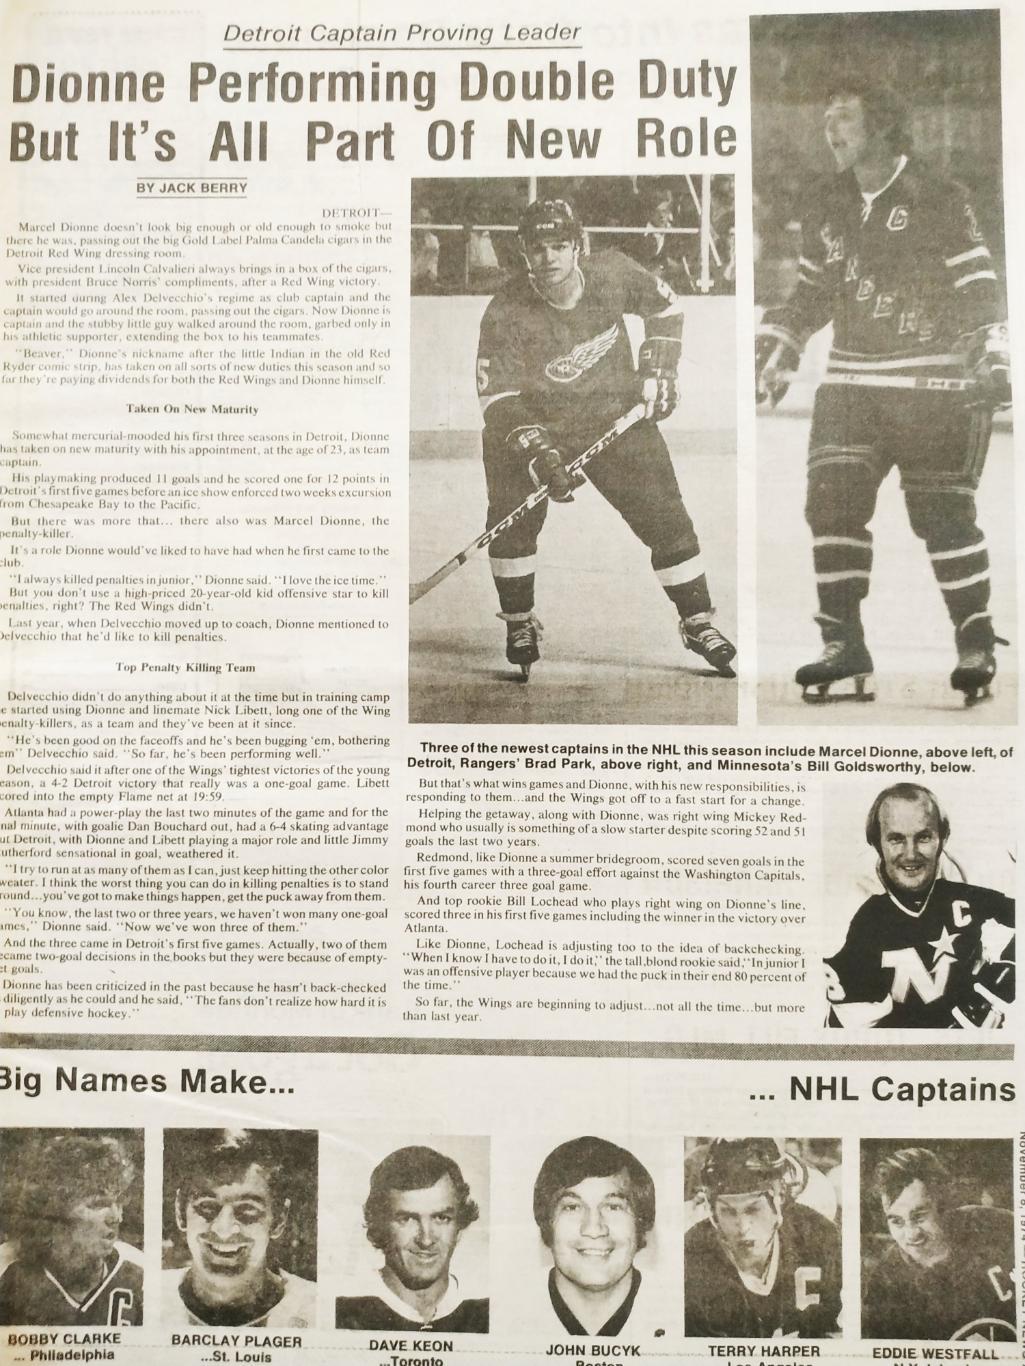 ХОККЕЙ ЖУРНАЛ ЕЖЕНЕДЕЛЬНИК НХЛ НОВОСТИ ХОККЕЯ NOV.8 1974 NHL THE HOCKEY NEWS 2